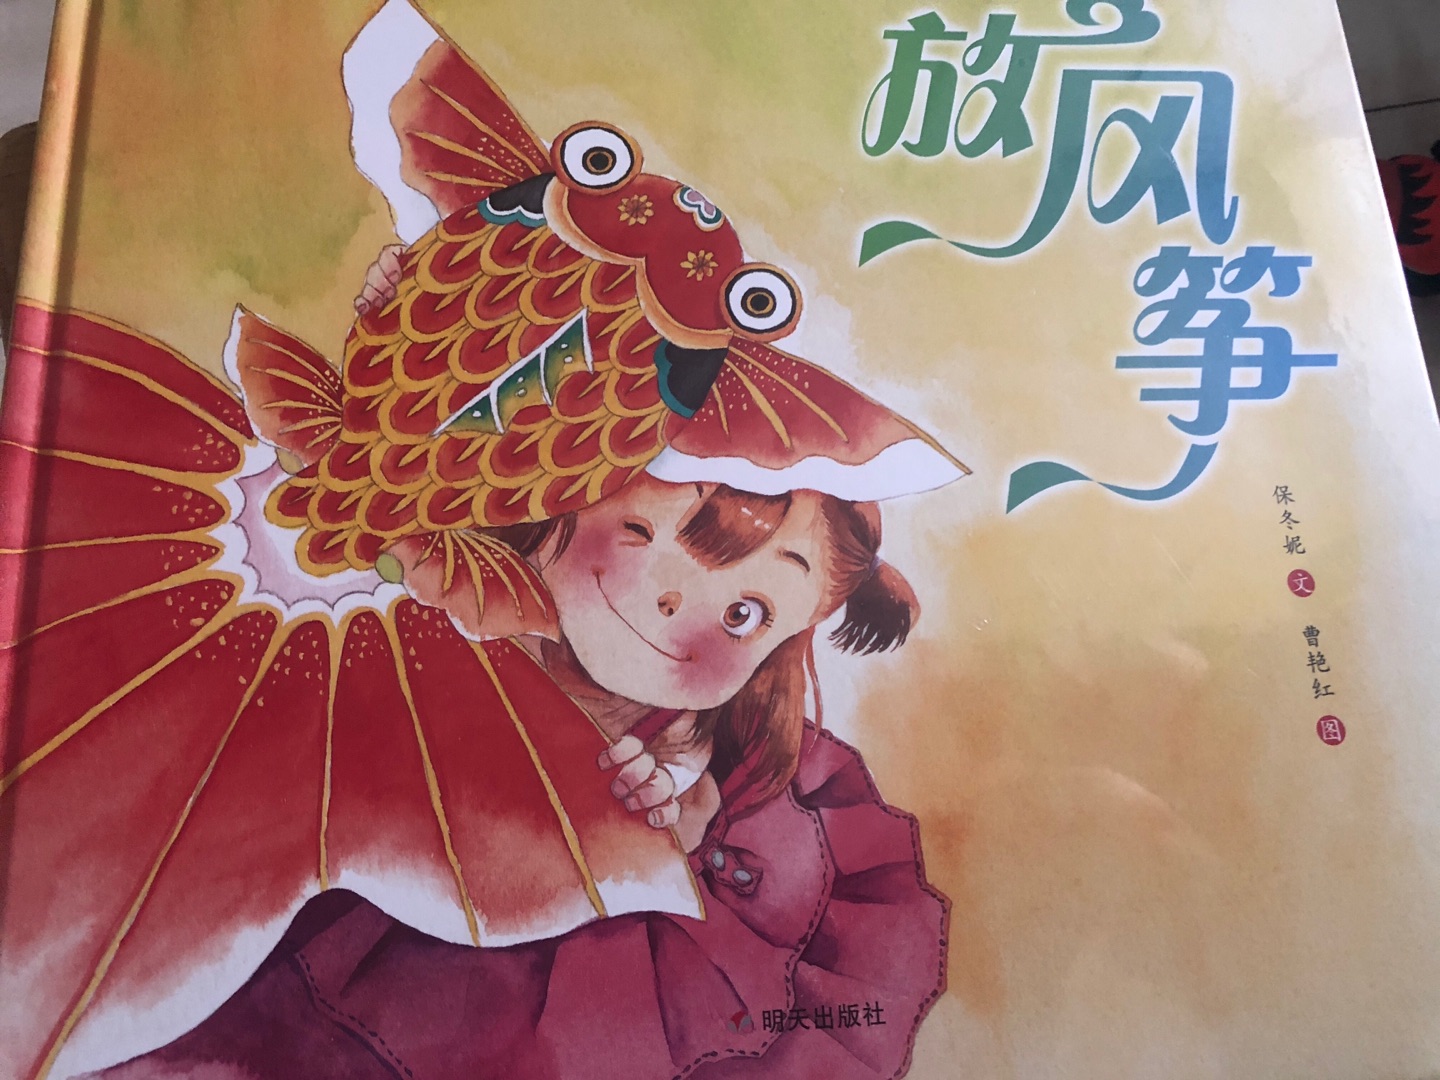 朋友推荐的中国非物质文化遗产图画书，画风很美，喜欢